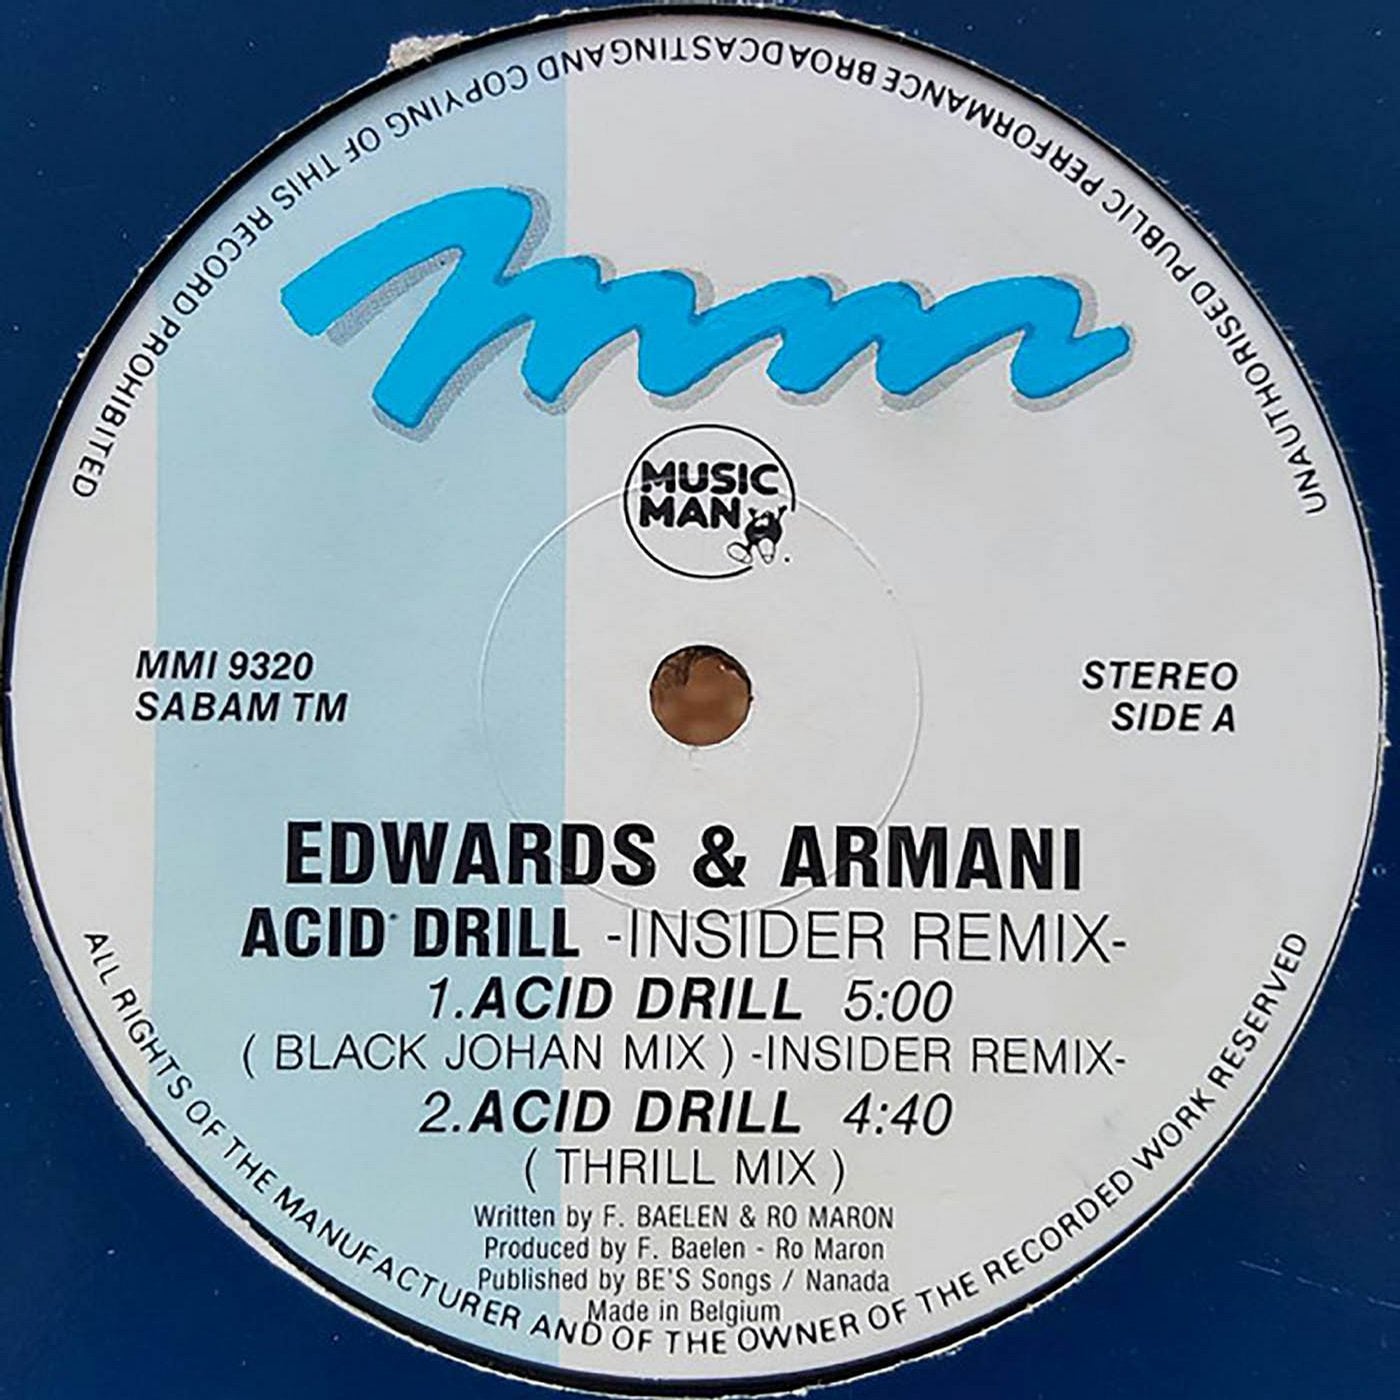 Acid Drill (Insider Remix)